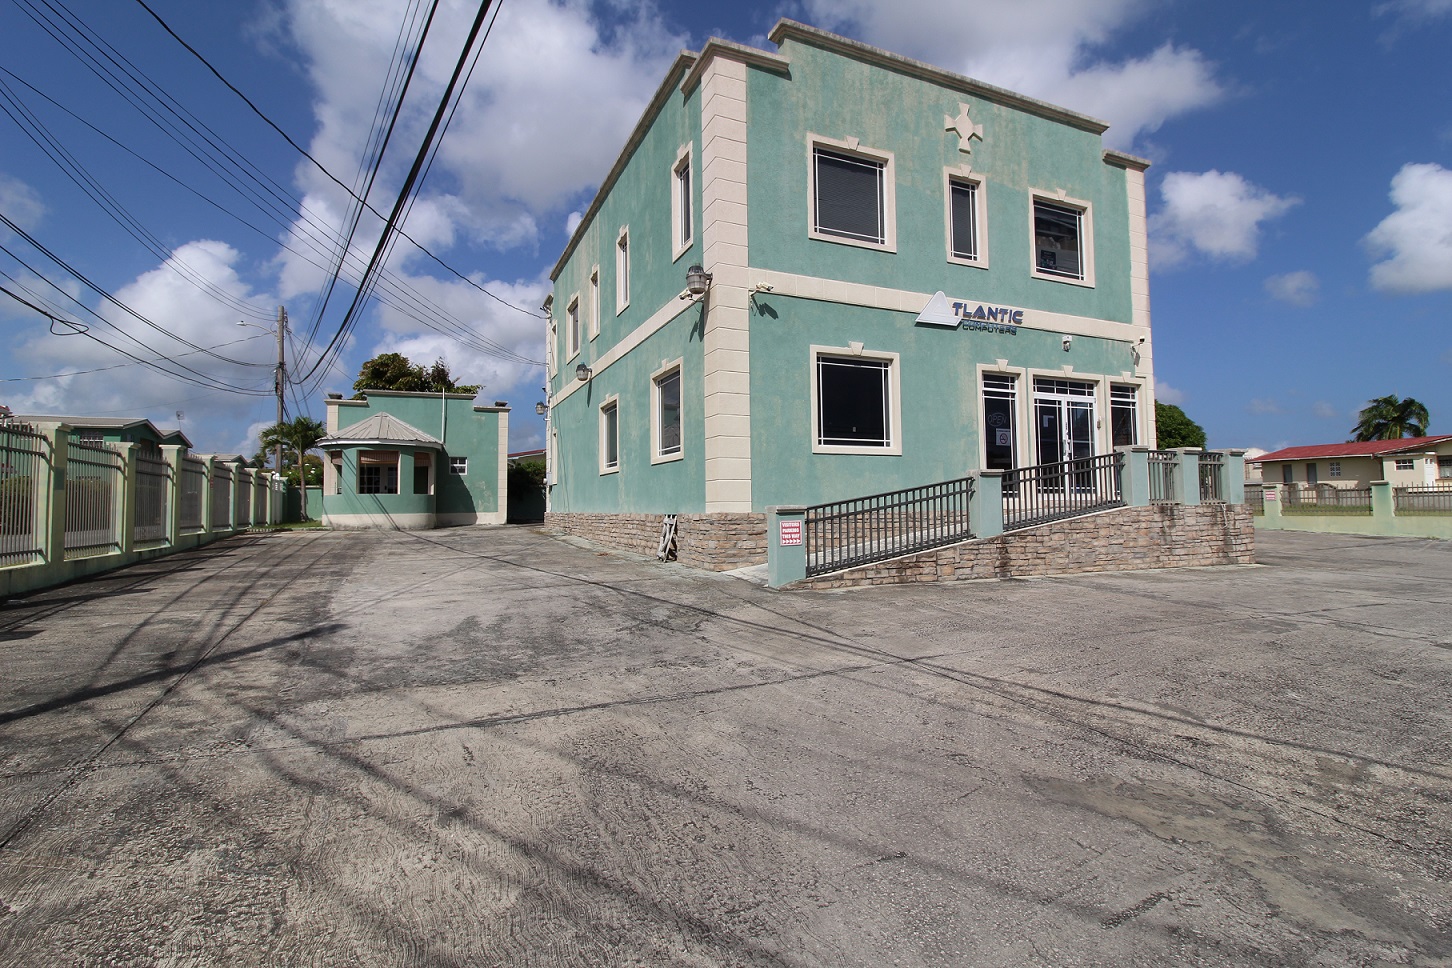 Maxwell Main Road No. 4, Maxwell, (South Coast) Christ Church, Barbados